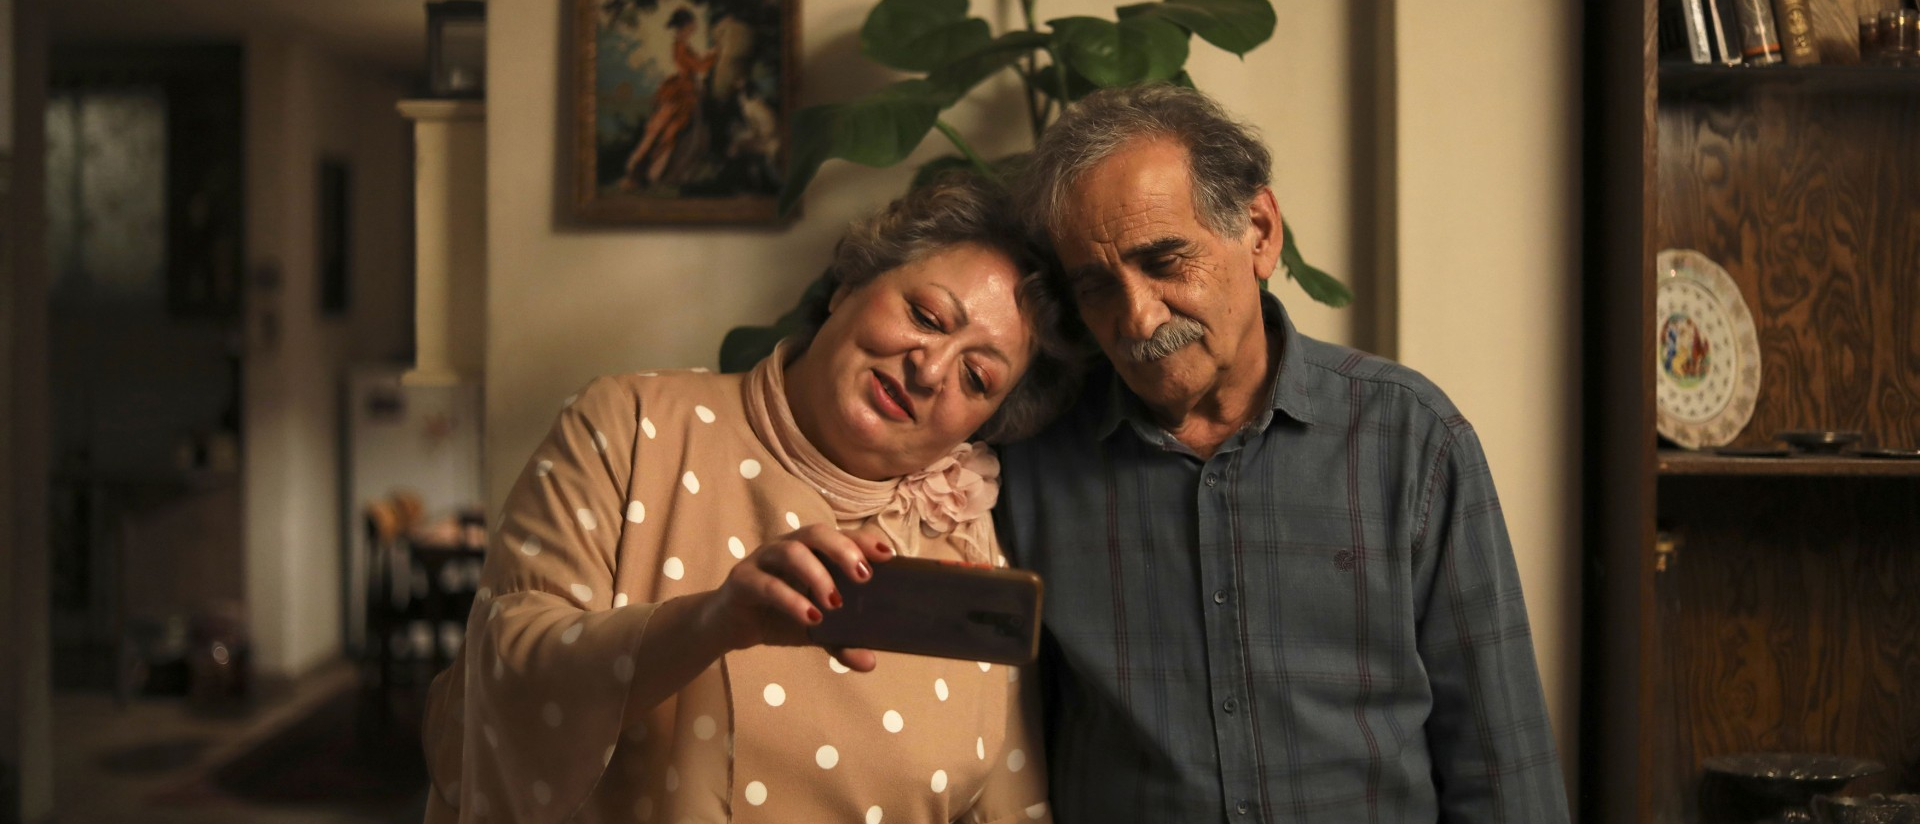 Der Hauptpreis der Ökumenischen Jury geht an den iranischen Film "My favourite Cake".